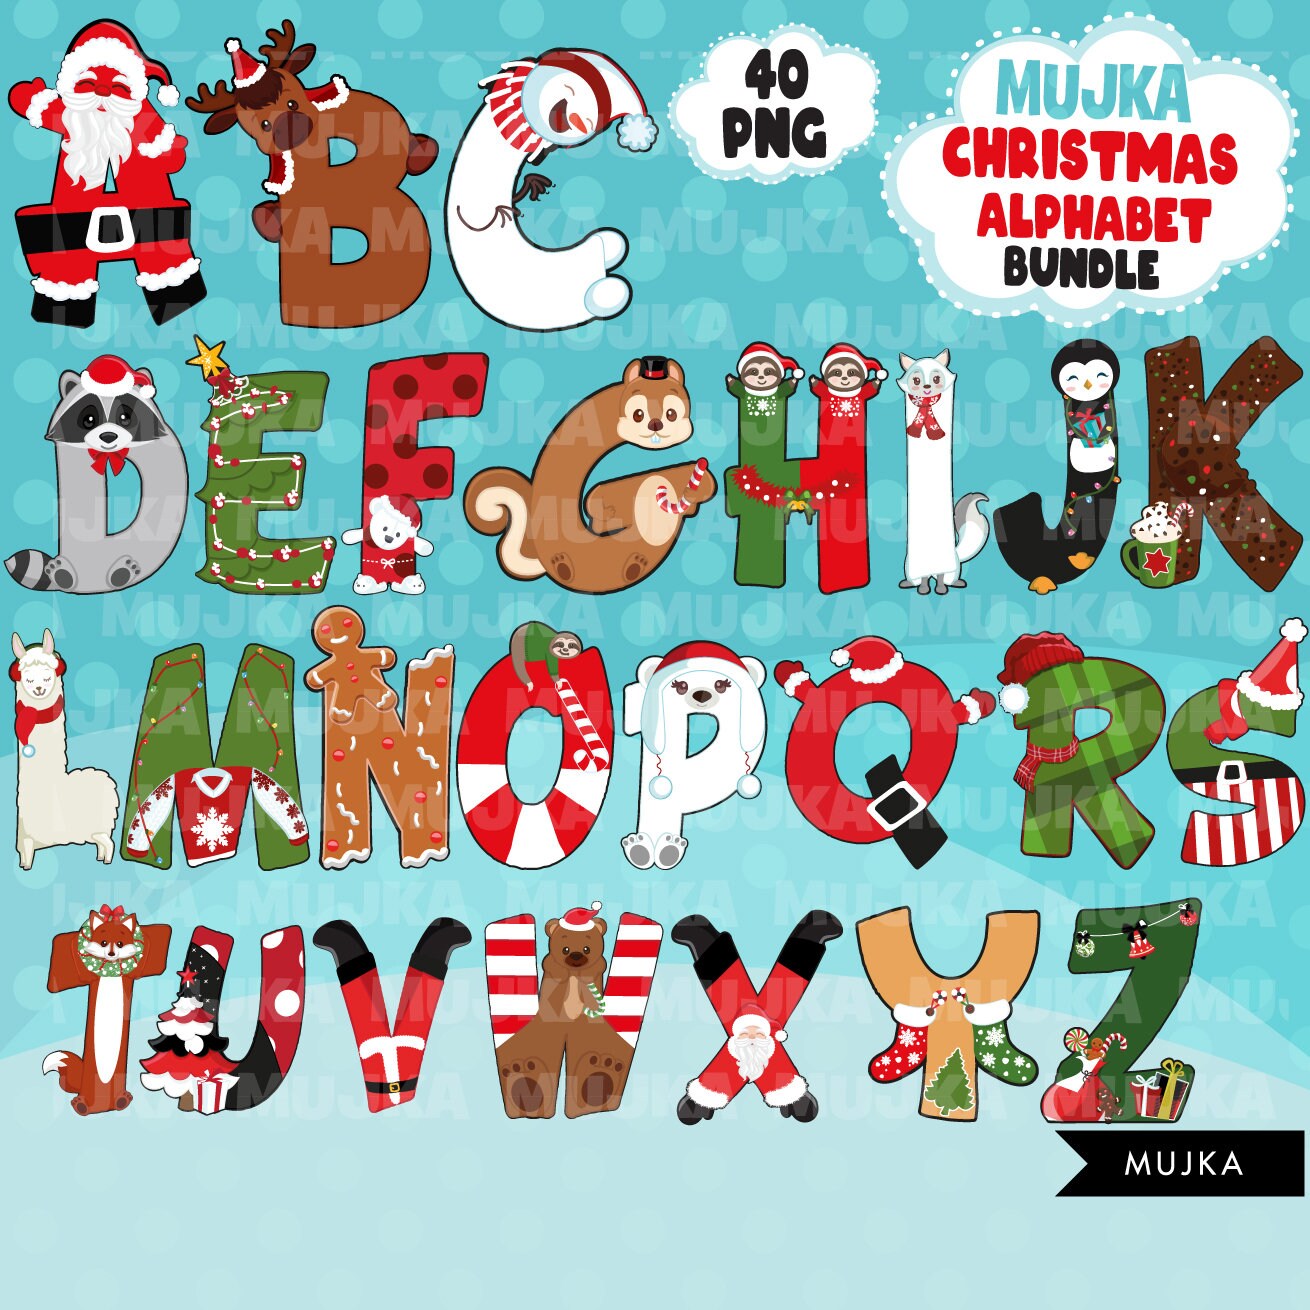 Paquete de imágenes prediseñadas PNG del alfabeto de Navidad, letras de números navideños lindos, gráficos de sublimación, fuente de sublimación de Santa, paquete alfa de Navidad